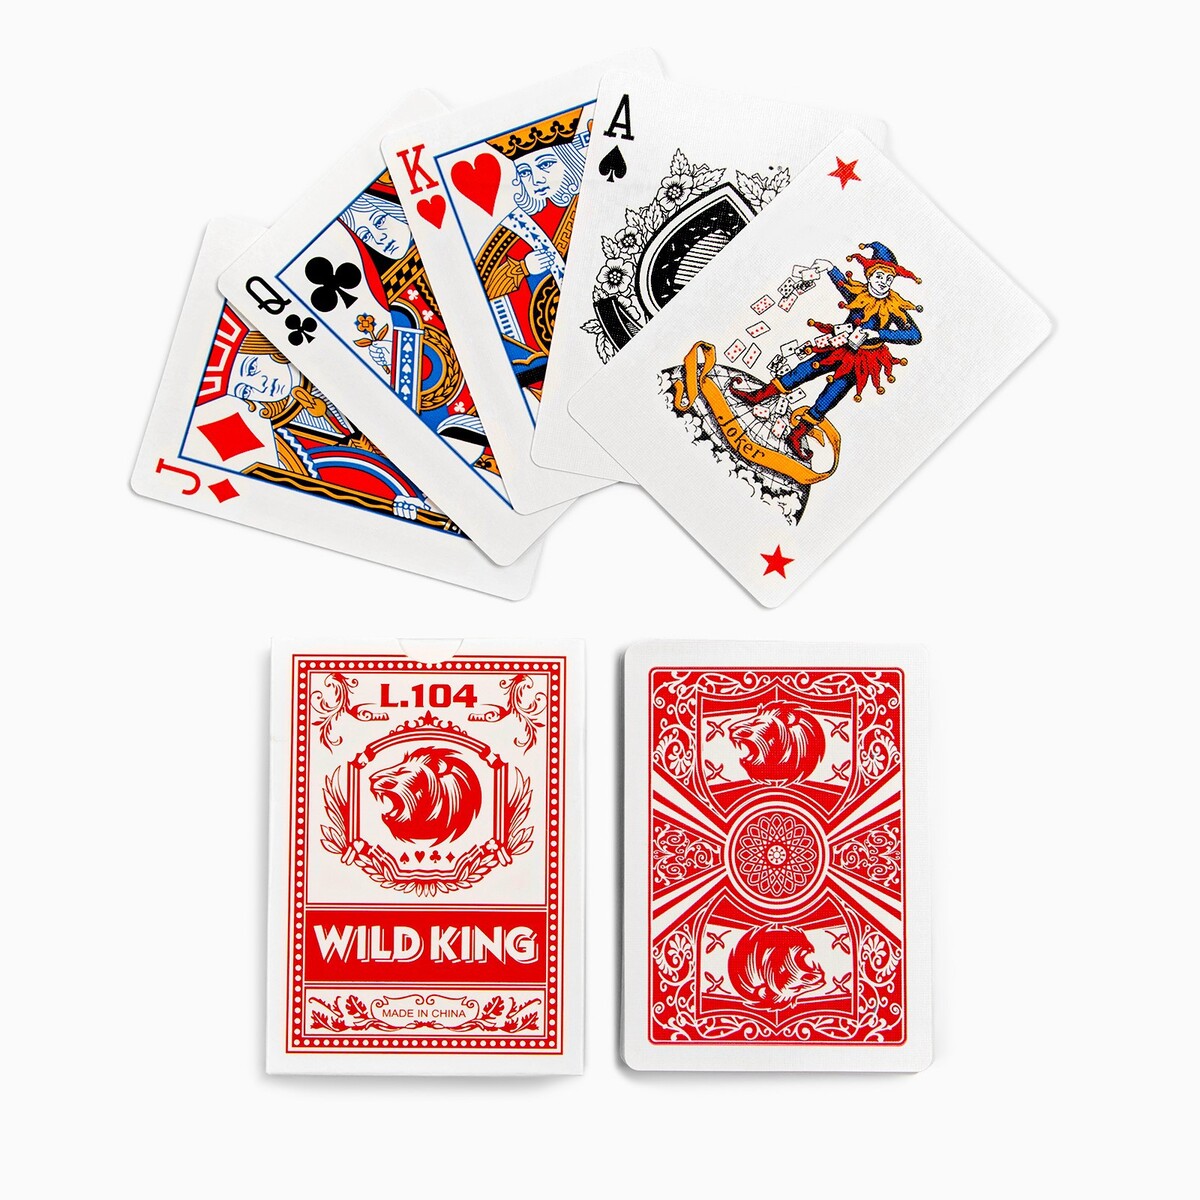    wild king, 55 , 280 /2, , 6.3  8.8 